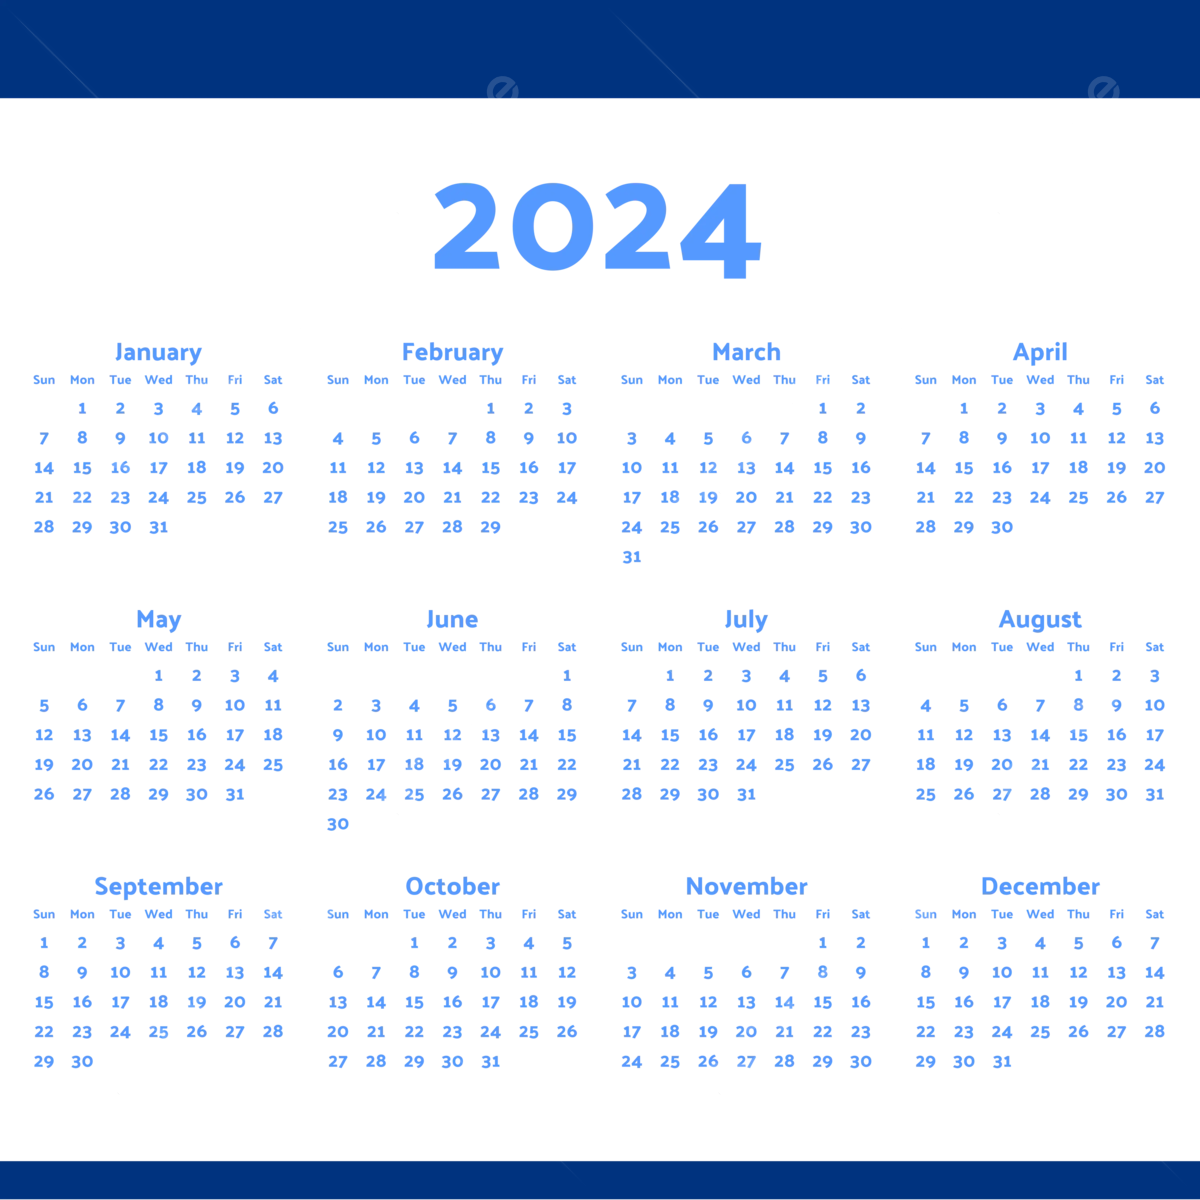 2024 Calendar Wallpapers Top Free 2024 Calendar Backgrounds